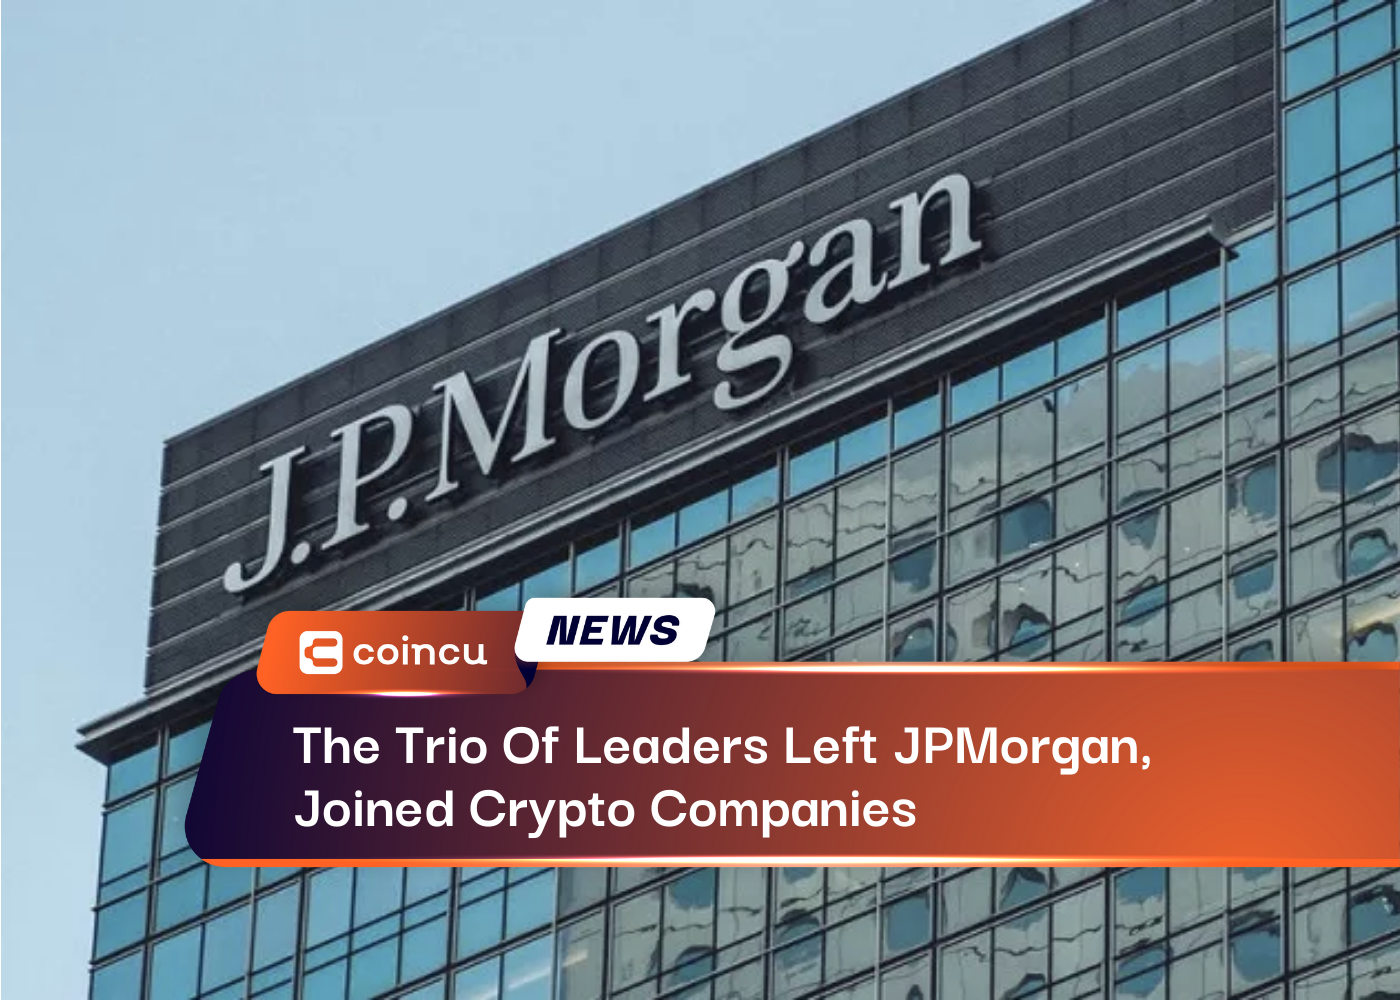 Le trio de dirigeants a quitté JPMorgan et a rejoint les sociétés de cryptographie